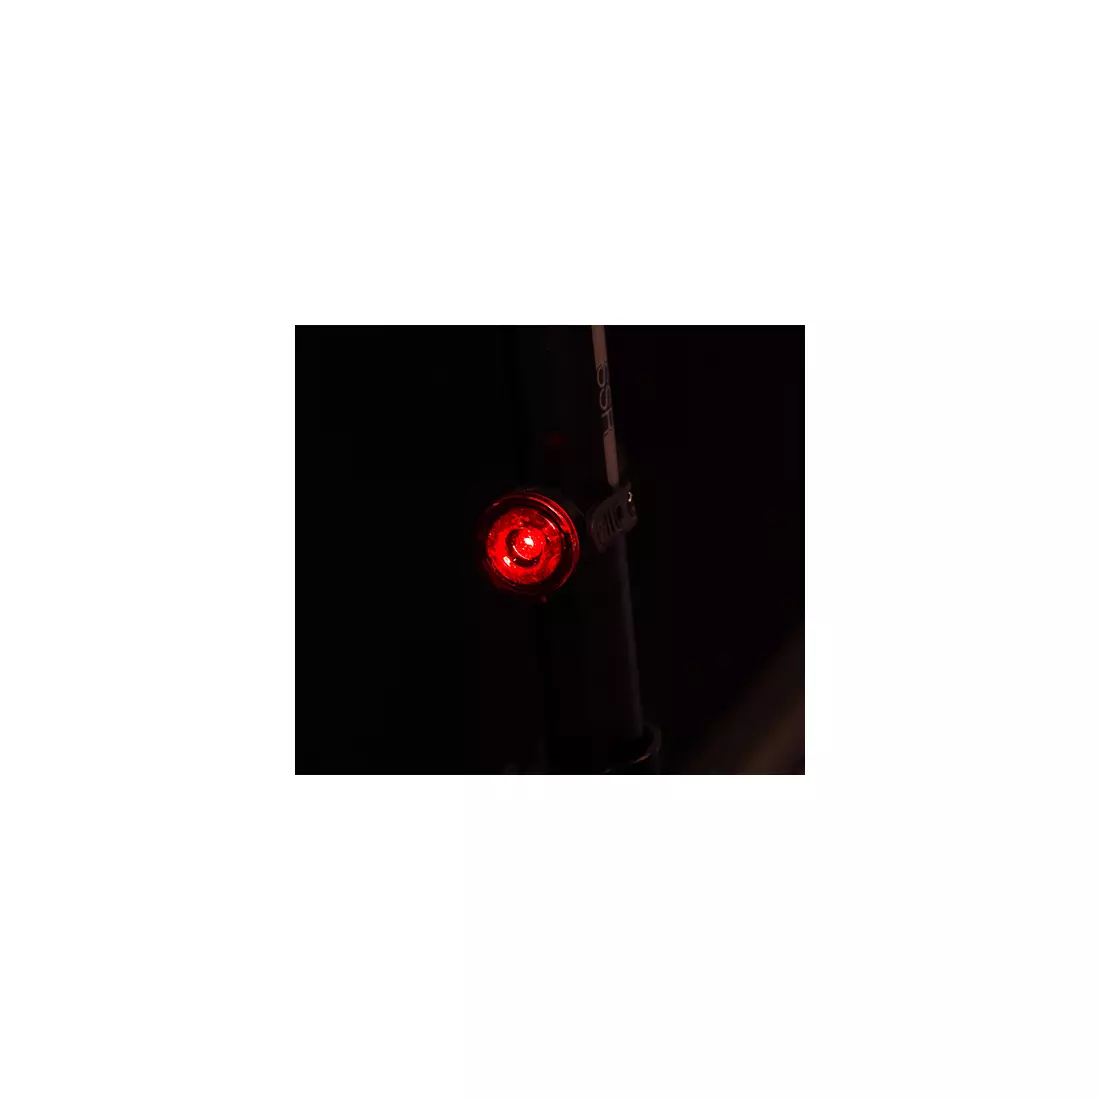 Fényszórókészlet SPANNINGA DOT 10 lumenes akkumulátor elöl fekete, DOT 10 lumenes akkumulátor hátul fekete (ÚJ) SNG-999173